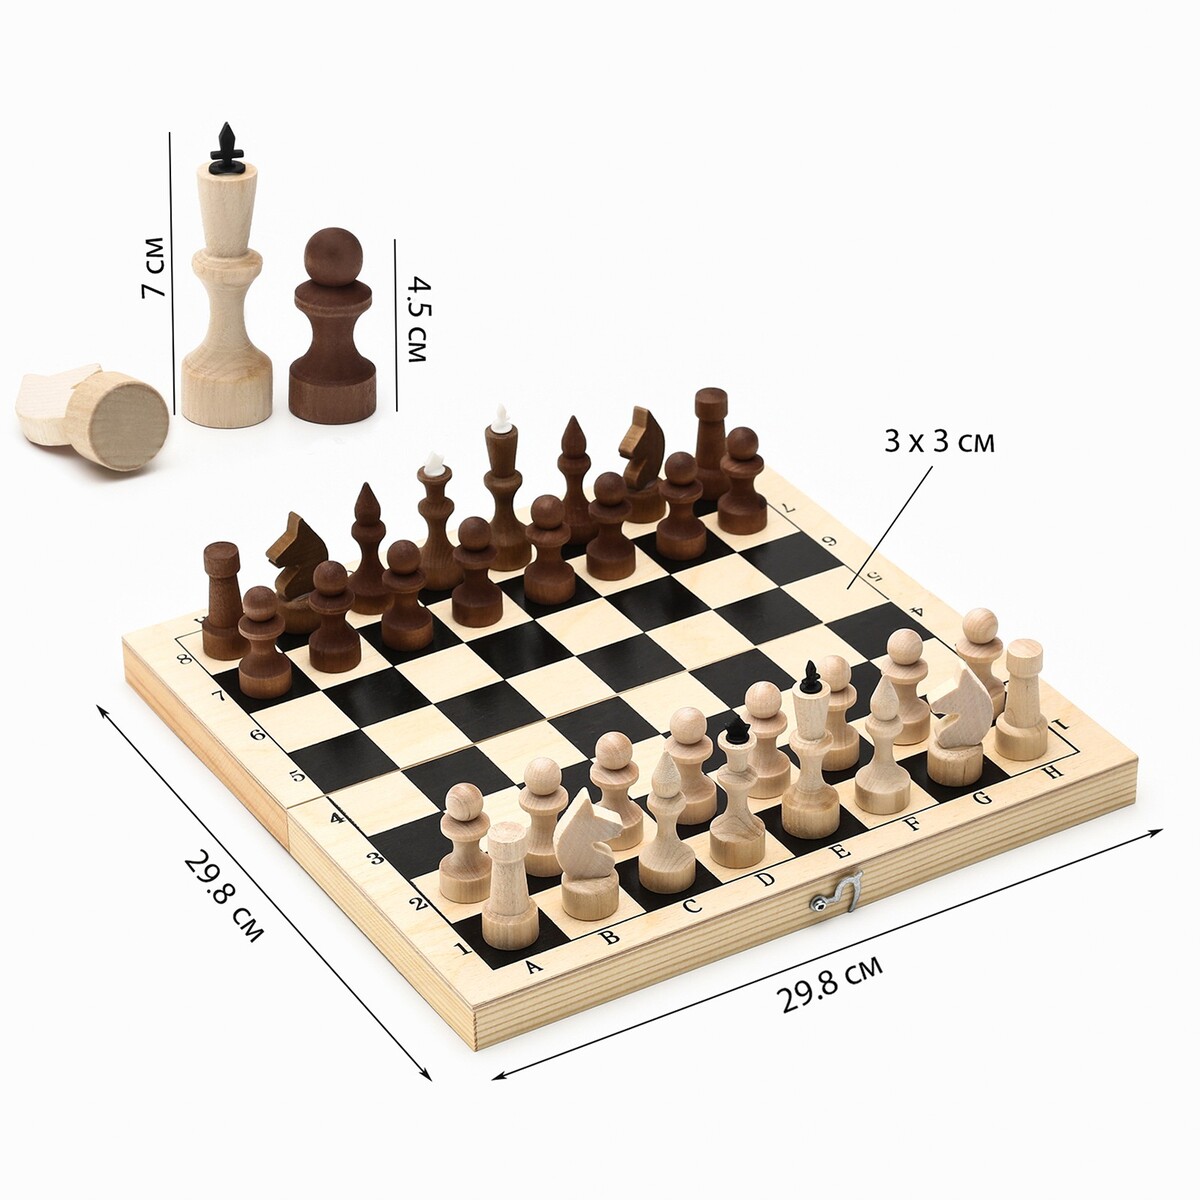 Шахматы деревянные обиходные 29.8 х 29.8 см, король h-7.2 см, пешка h-4.5 см шахматы деревянные обиходные 29 8 х 29 8 см король h 7 2 см пешка h 4 5 см